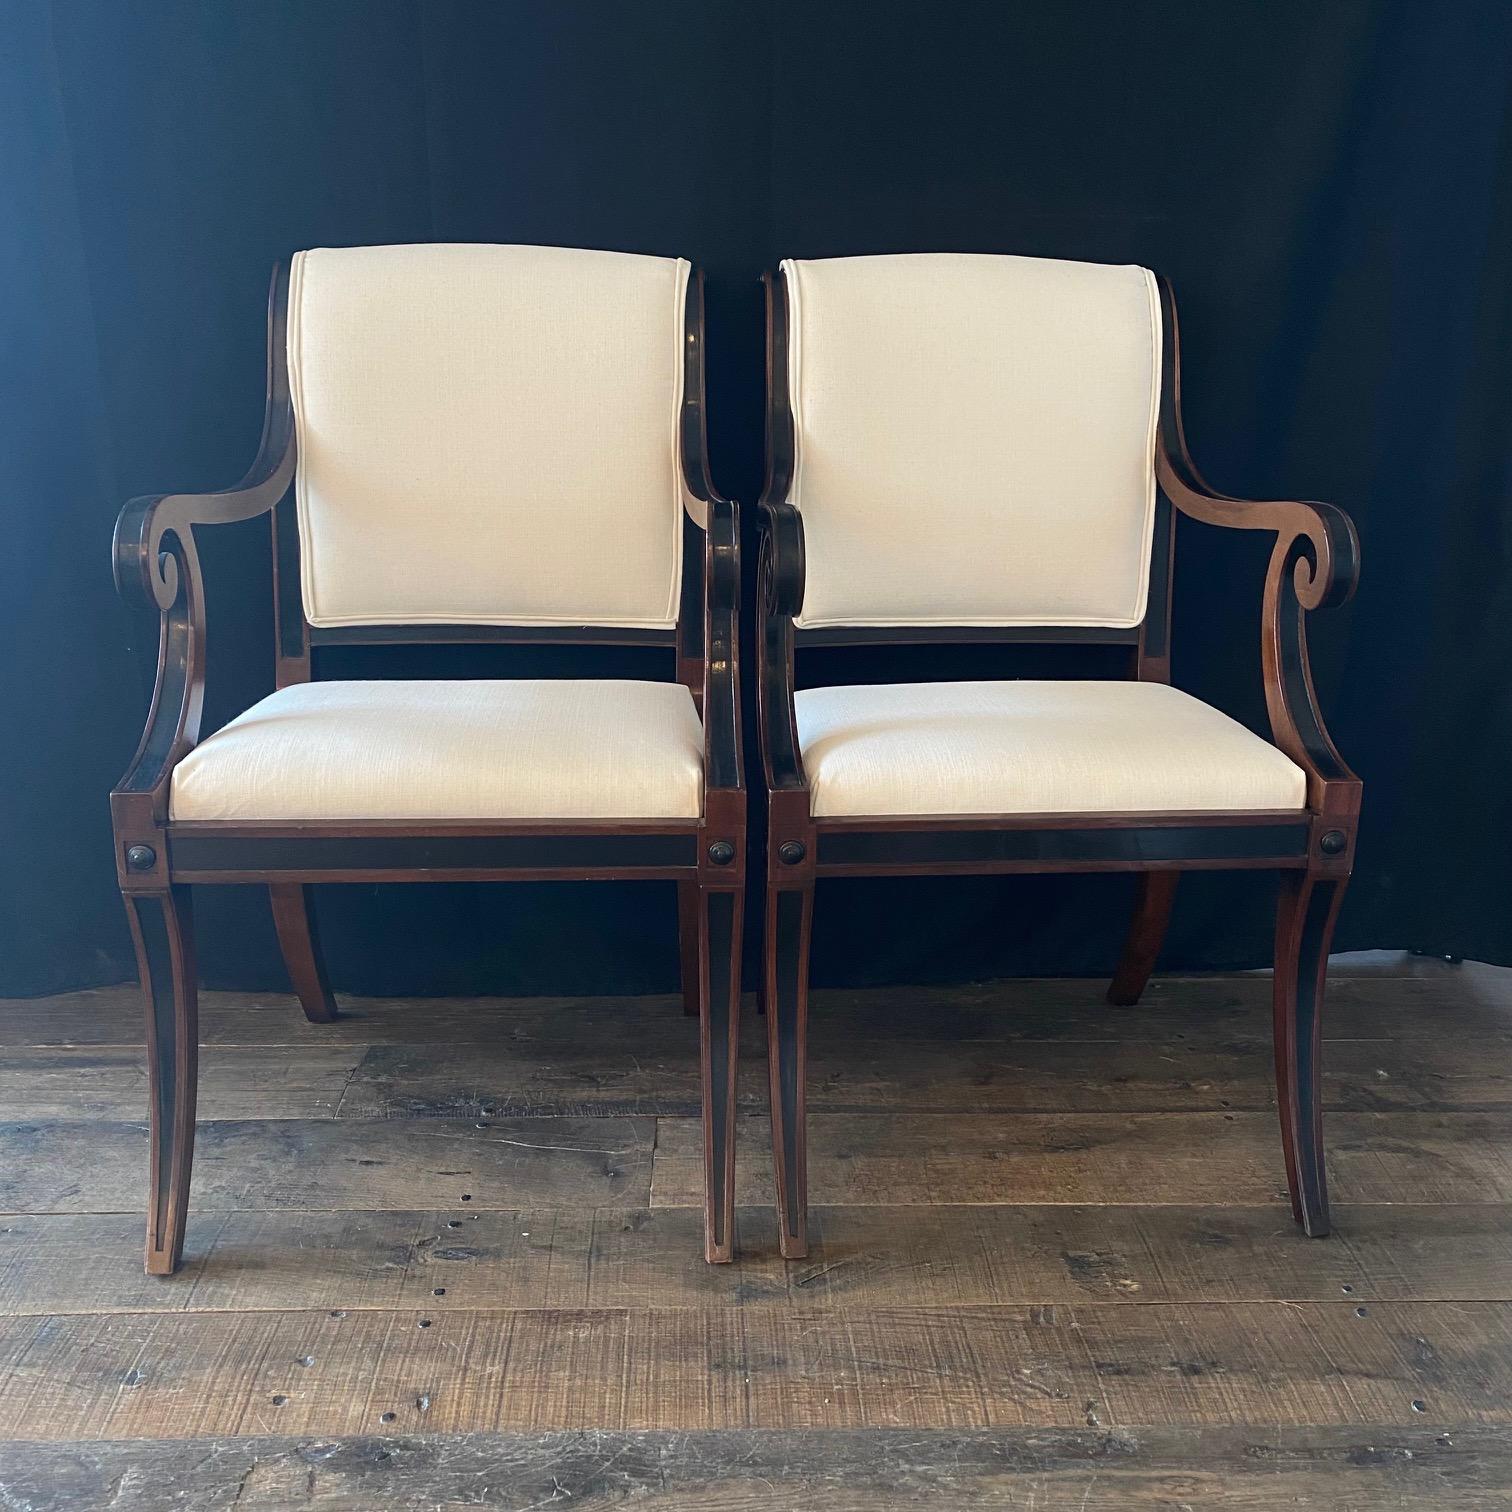 Ein spektakuläres Set von Klismos Esszimmerstühlen: Ebenholz und Mahagoni im neoklassischen Stil mit neuen, neutralen und hochwertigen Polstern, die das klassische Design jedes Stuhls zur Geltung bringen. Zwei Sessel und drei Beistellstühle. Der